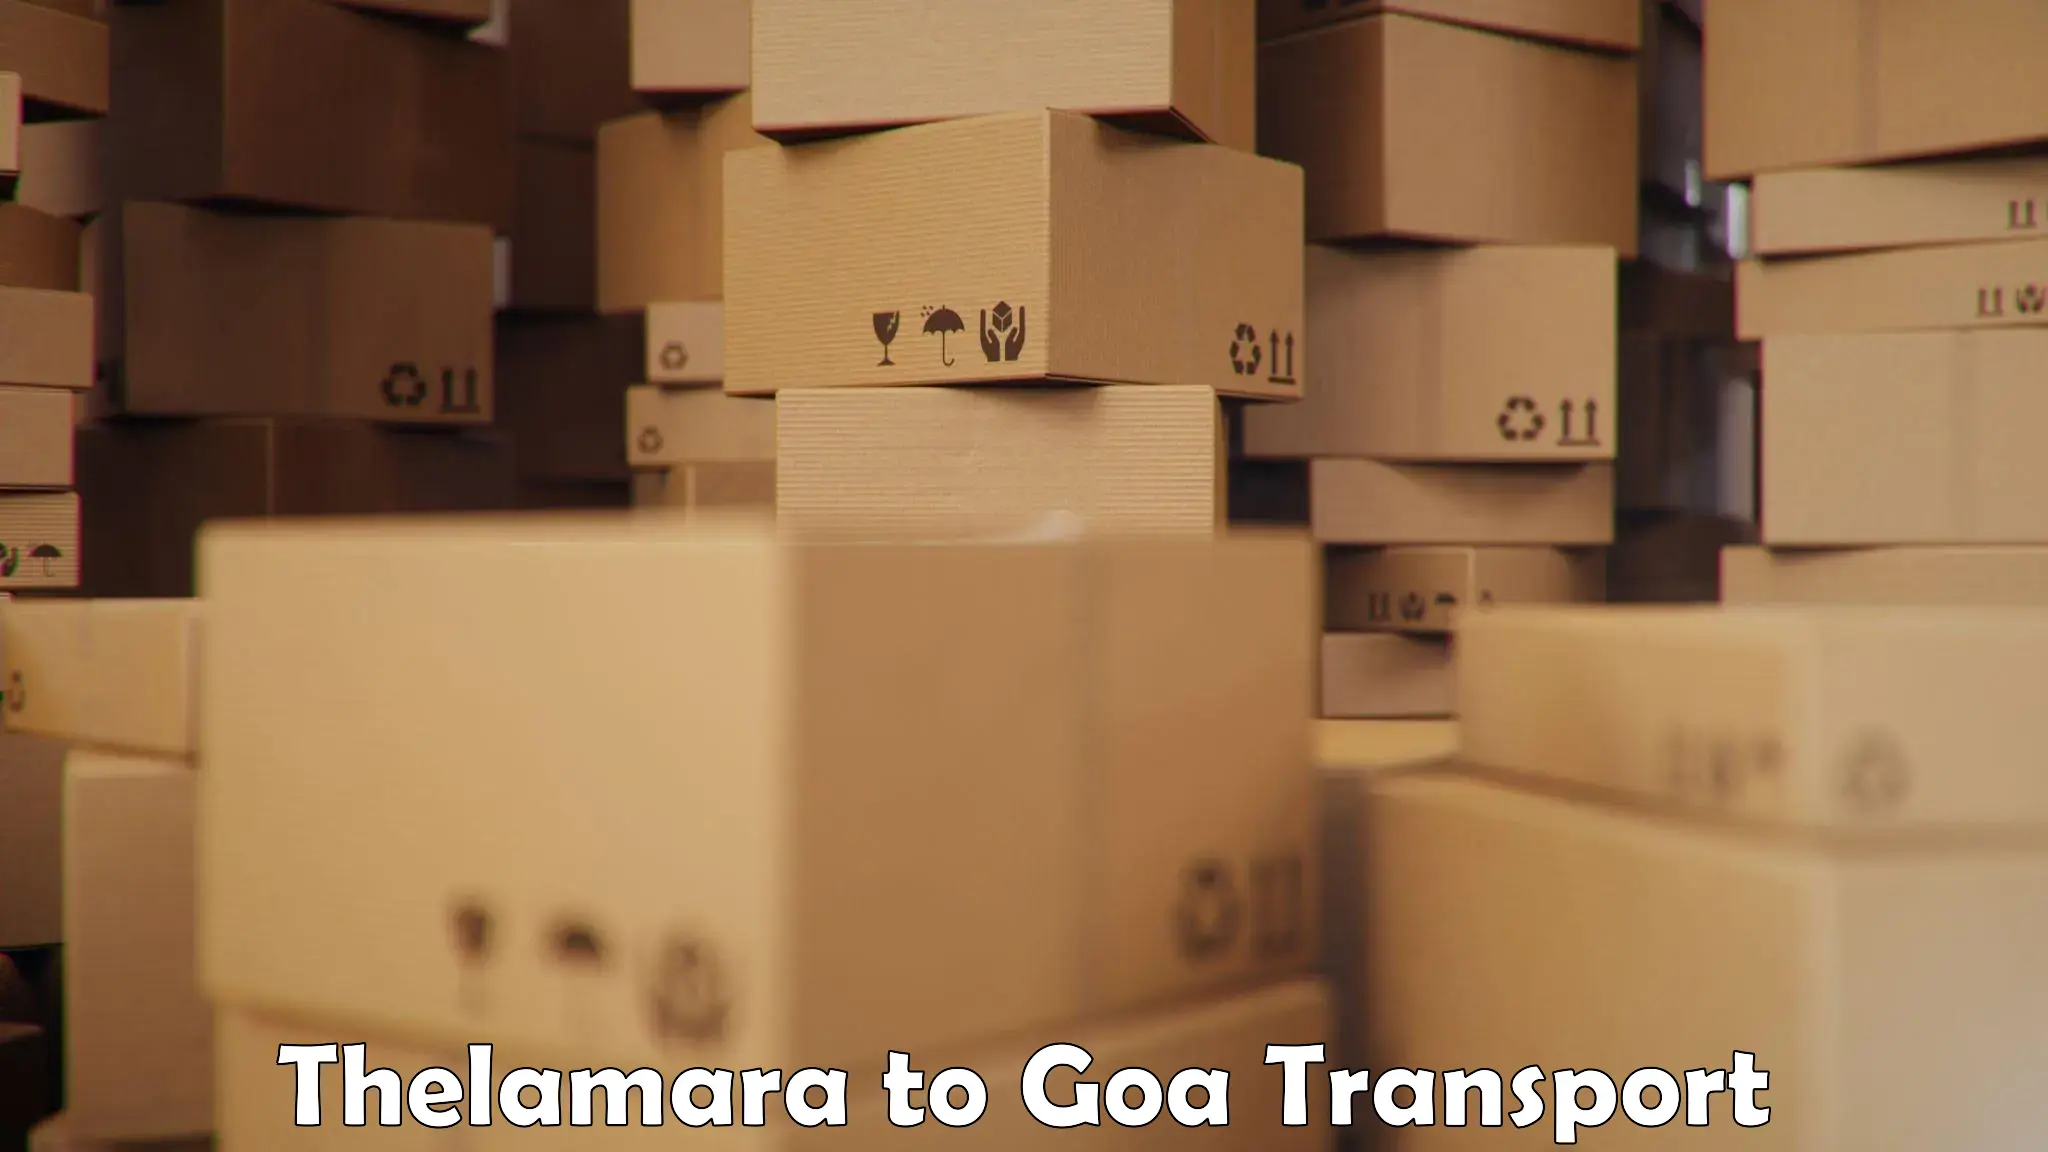 Daily parcel service transport Thelamara to Vasco da Gama